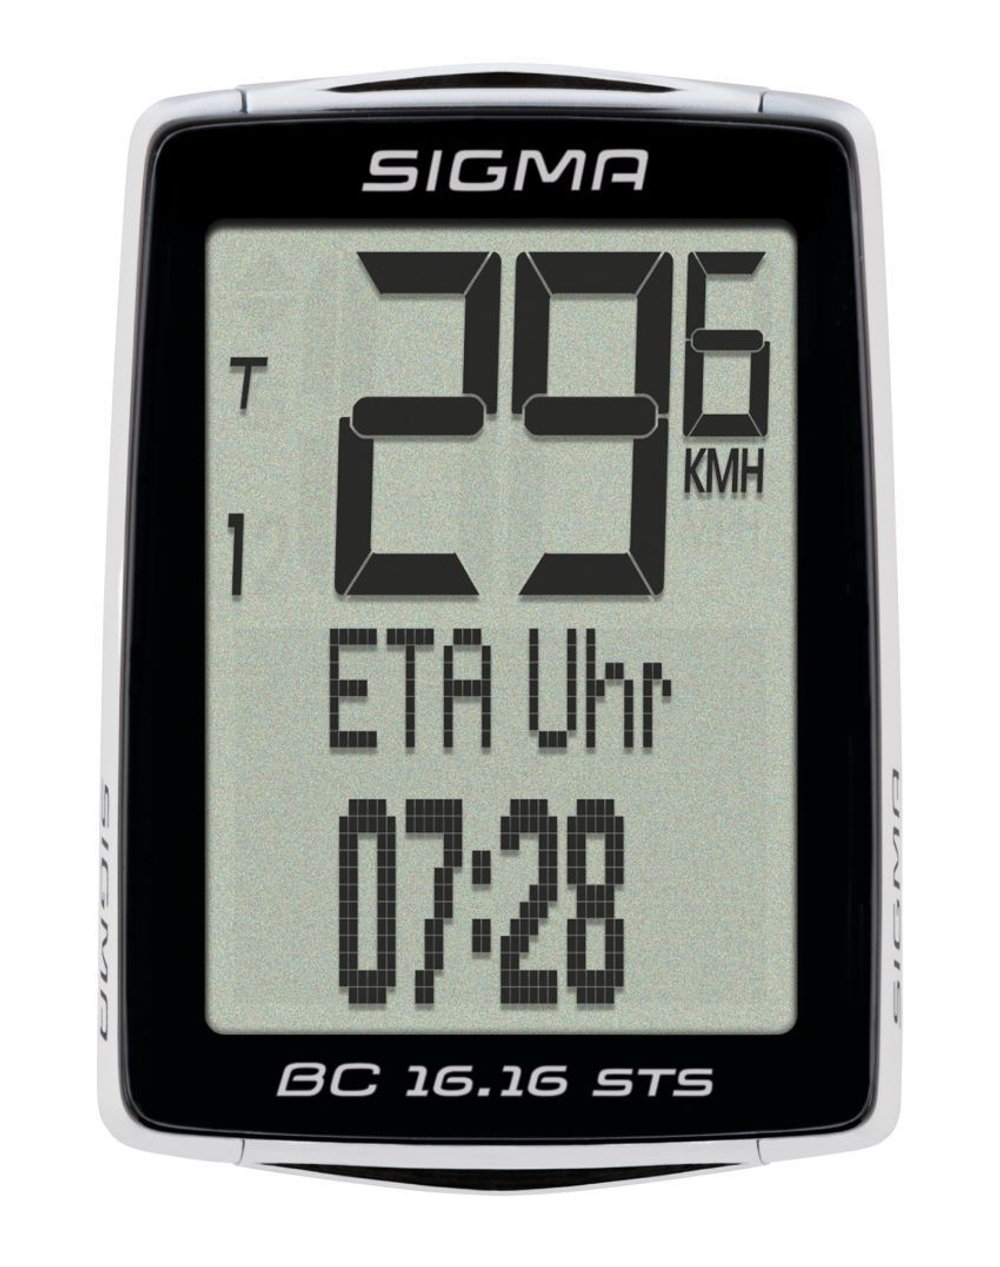 Велокомпьютер SIGMA BC 16.16 STS 16 функций беспроводной подсветка NFC(Андроид) черно-белый